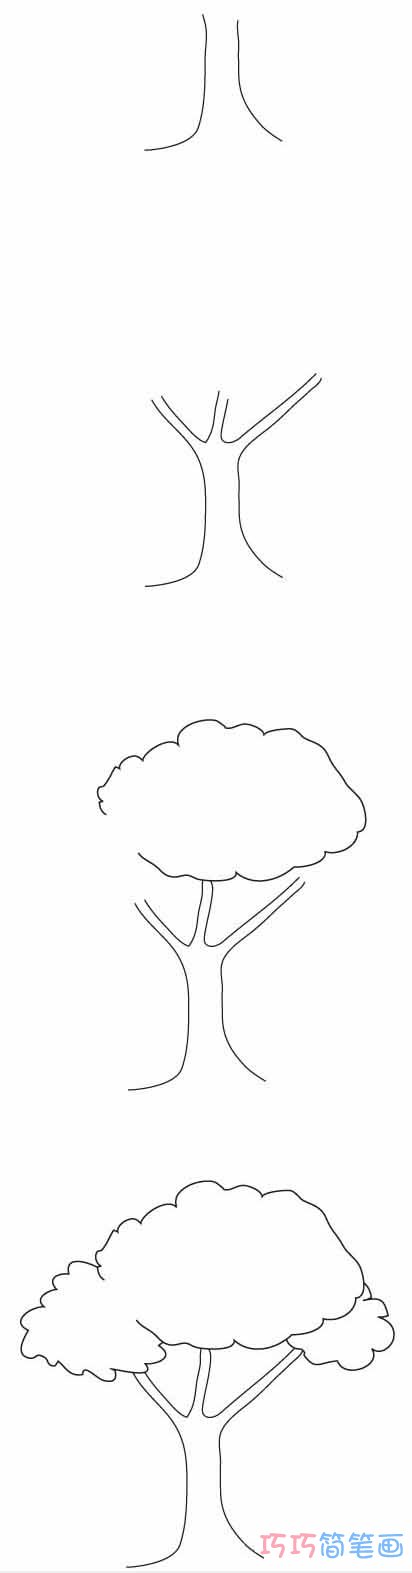 大树怎么画简洁好看 带步骤图大树简笔画图片